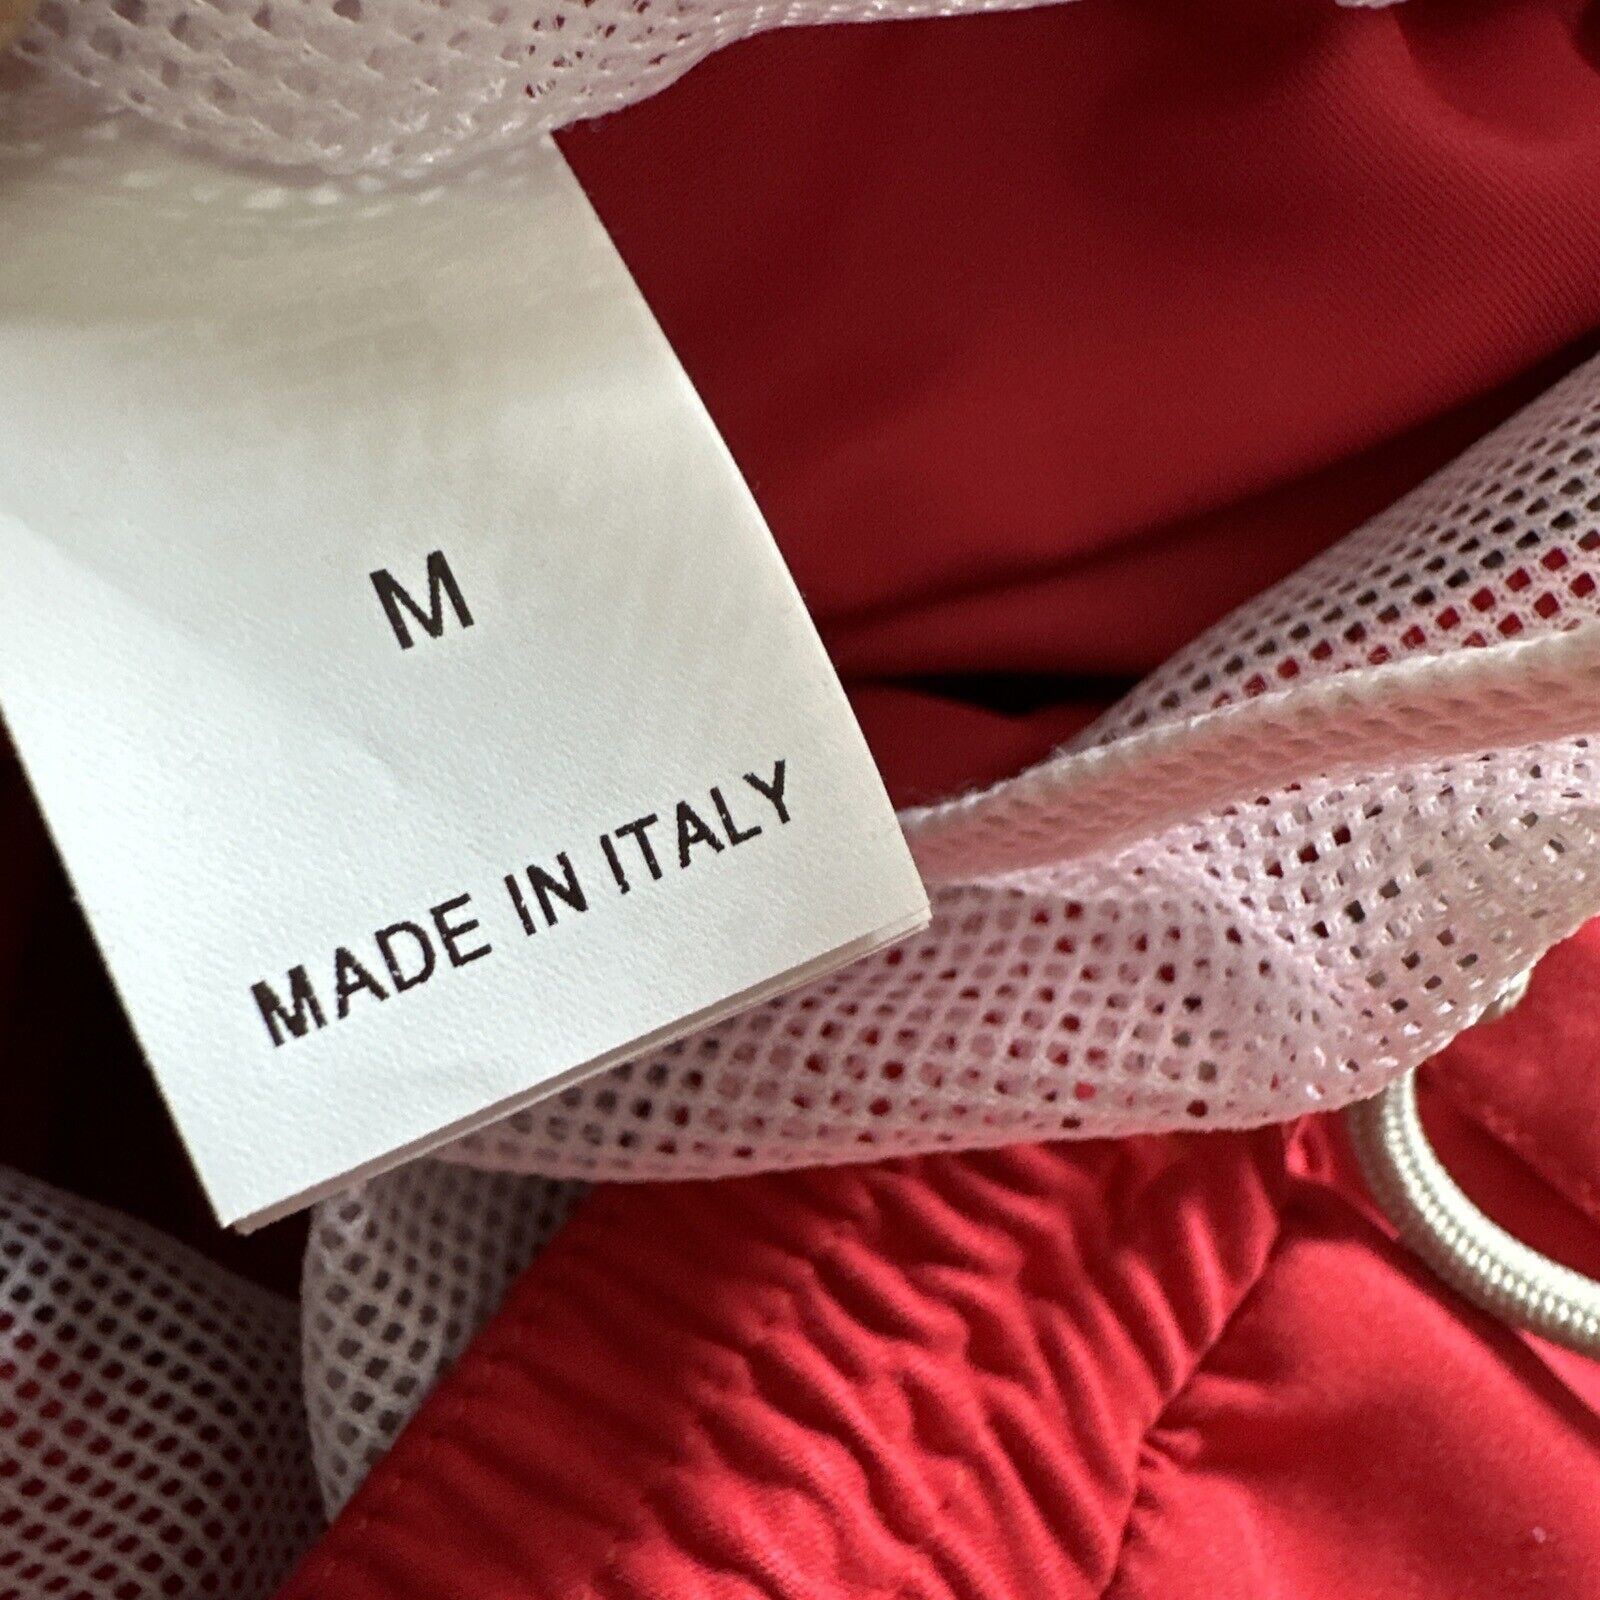 NWT $550 Brunello Cucinelli Мужчины Купальники Короткие Цвета Красный M Италия